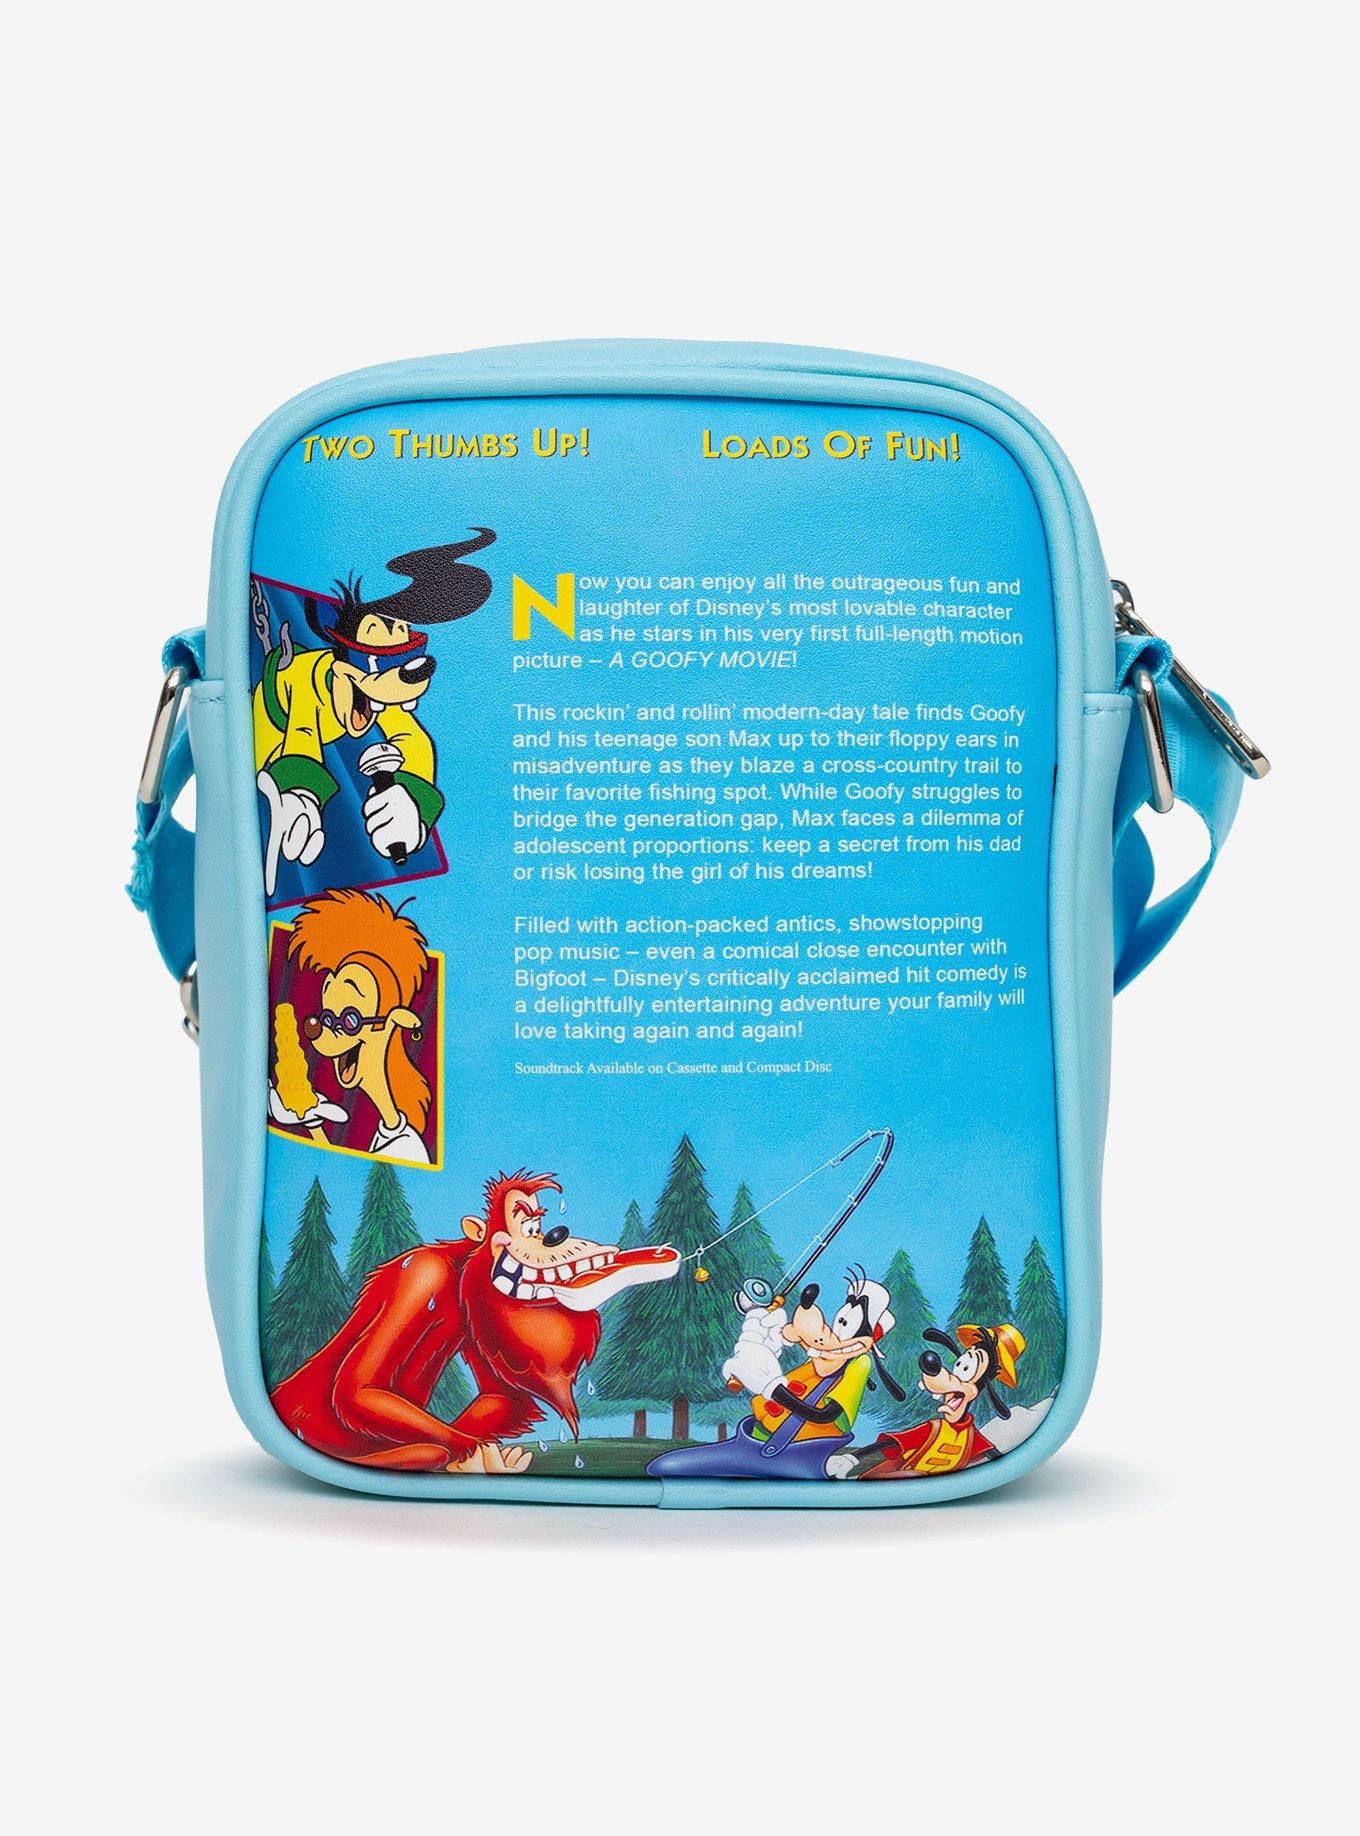 Disney Goofy Movie VHS Movie Box Replica Crossbody Bag, , alternate